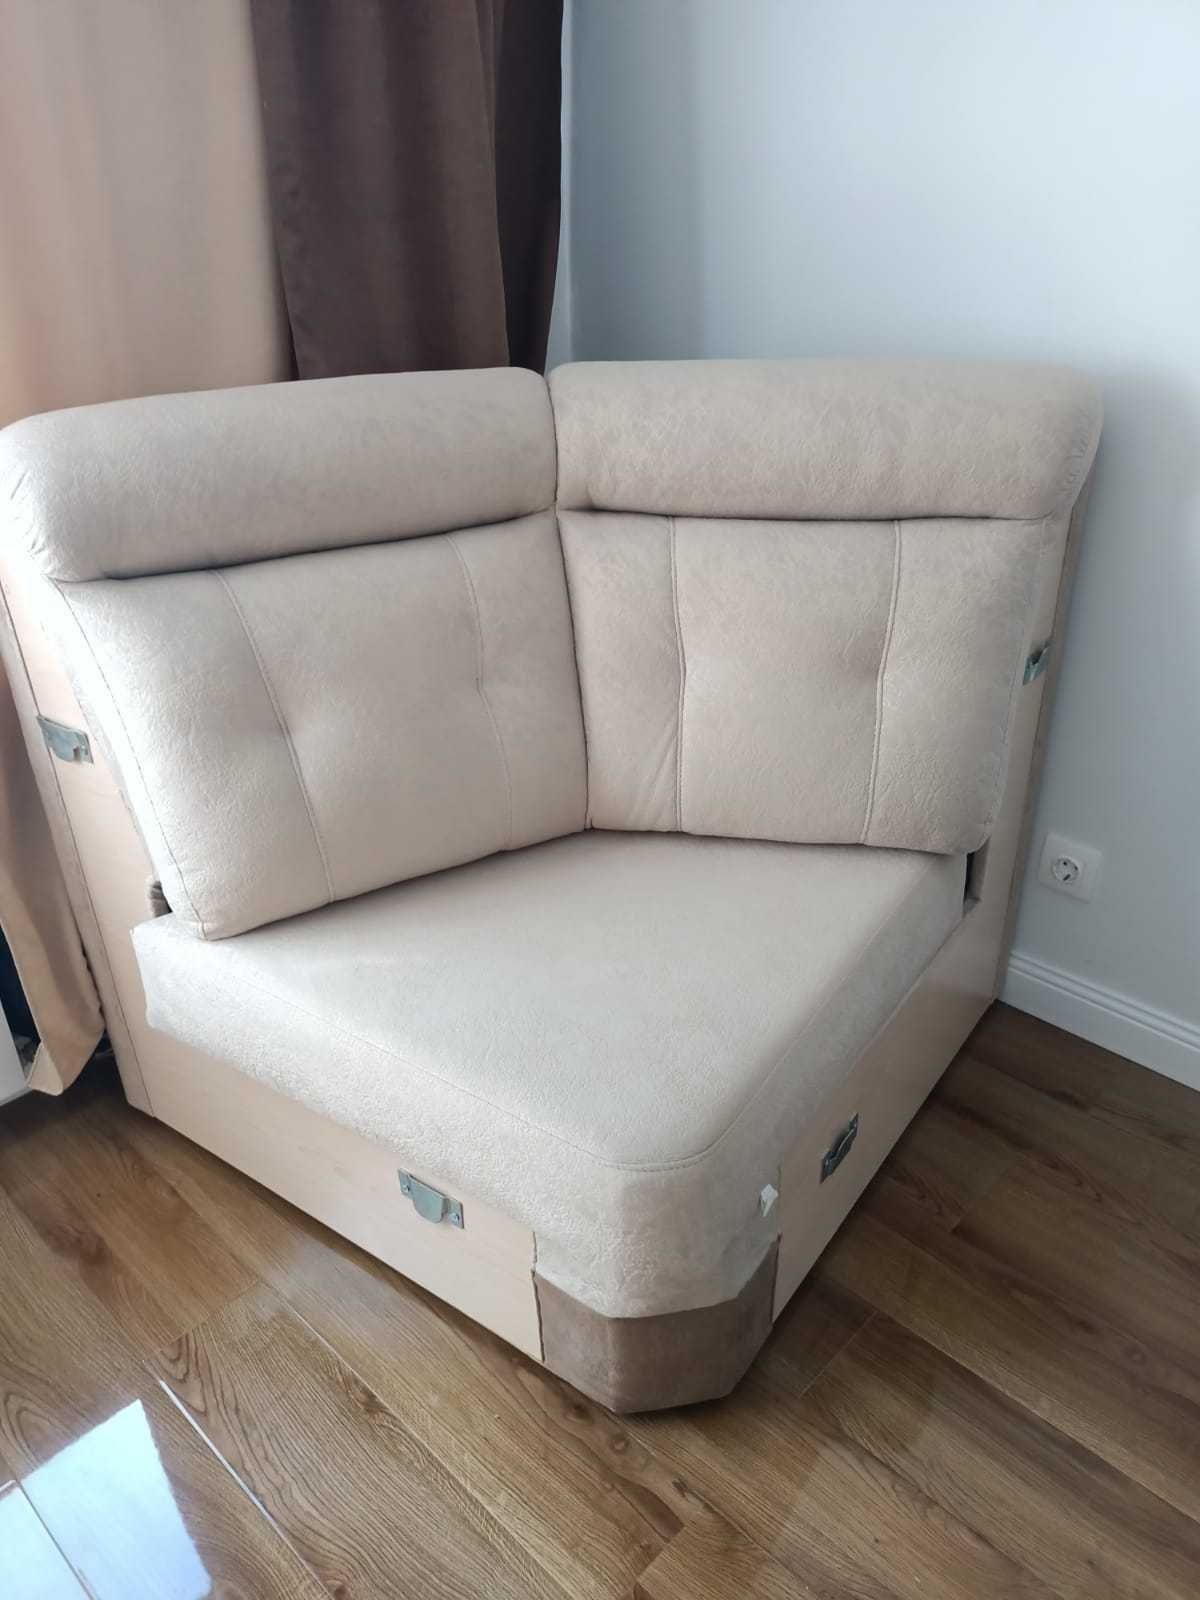 продам диван за 85тысяч тенге, белорусское качество